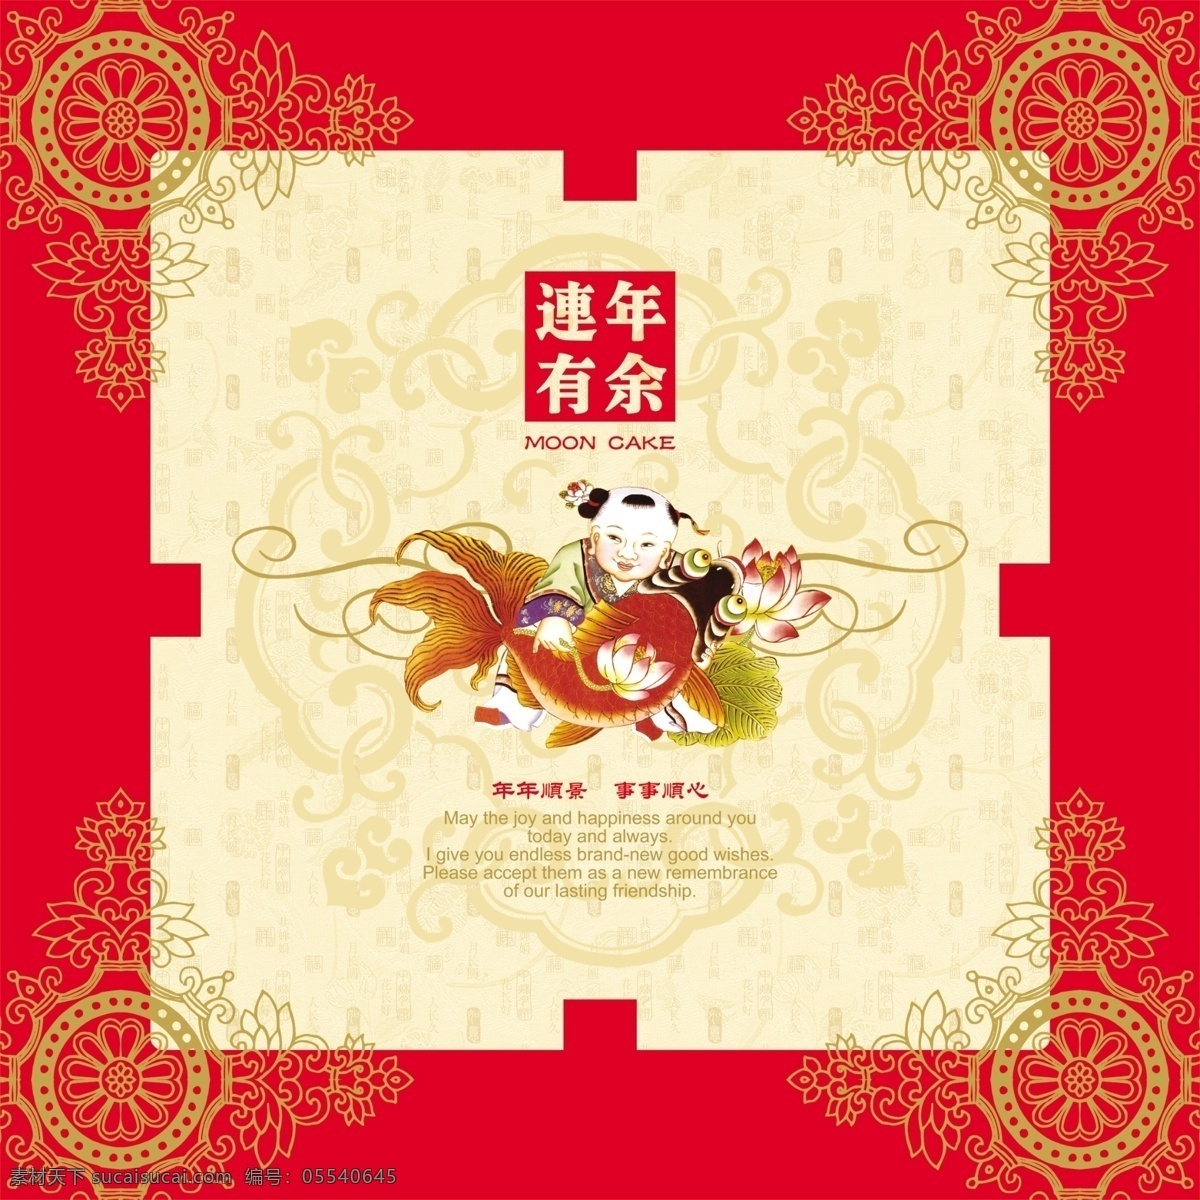 中秋月饼 包装设计 包装 月饼 中秋 中国风 民族 传统 红色